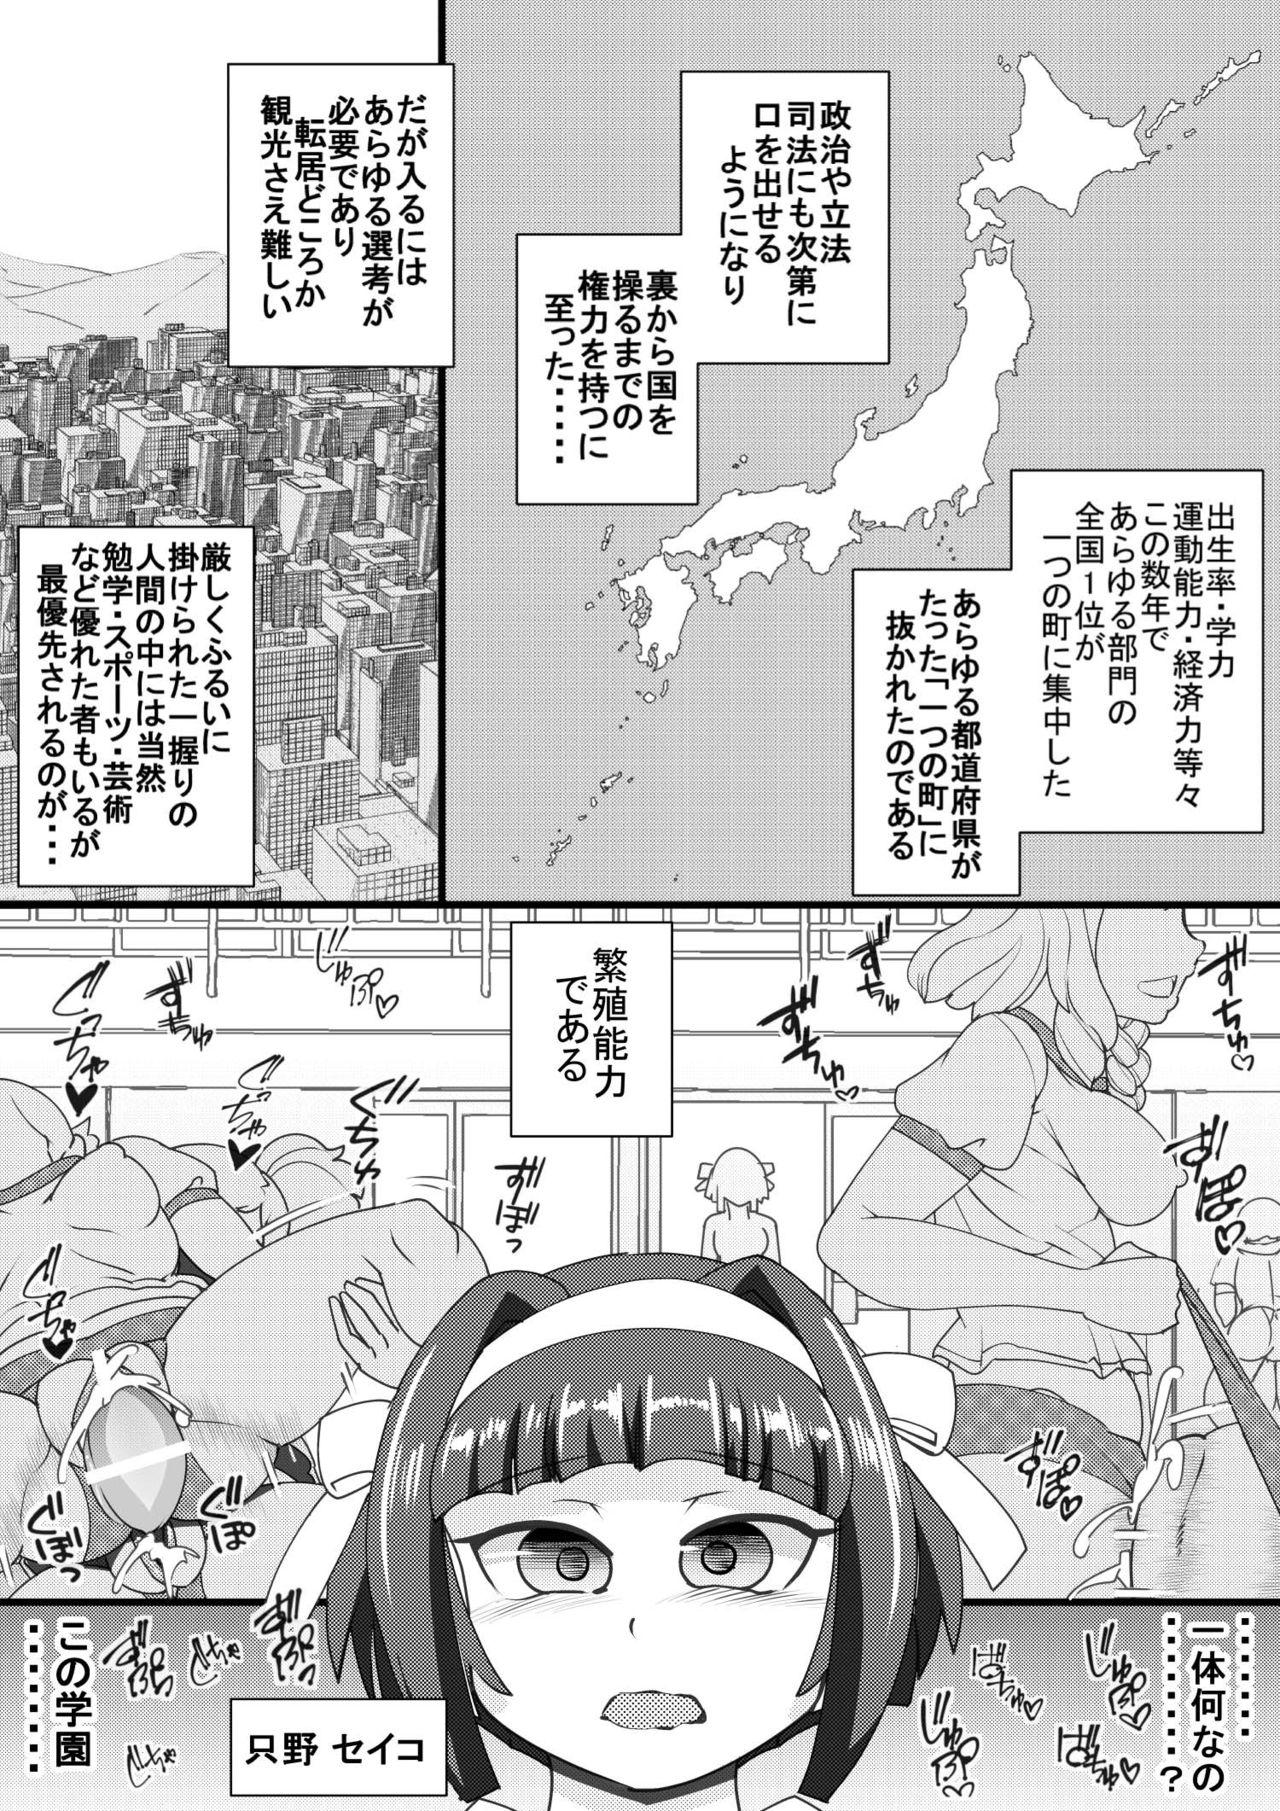 Long Haramachi 2 - Original Time - Page 3